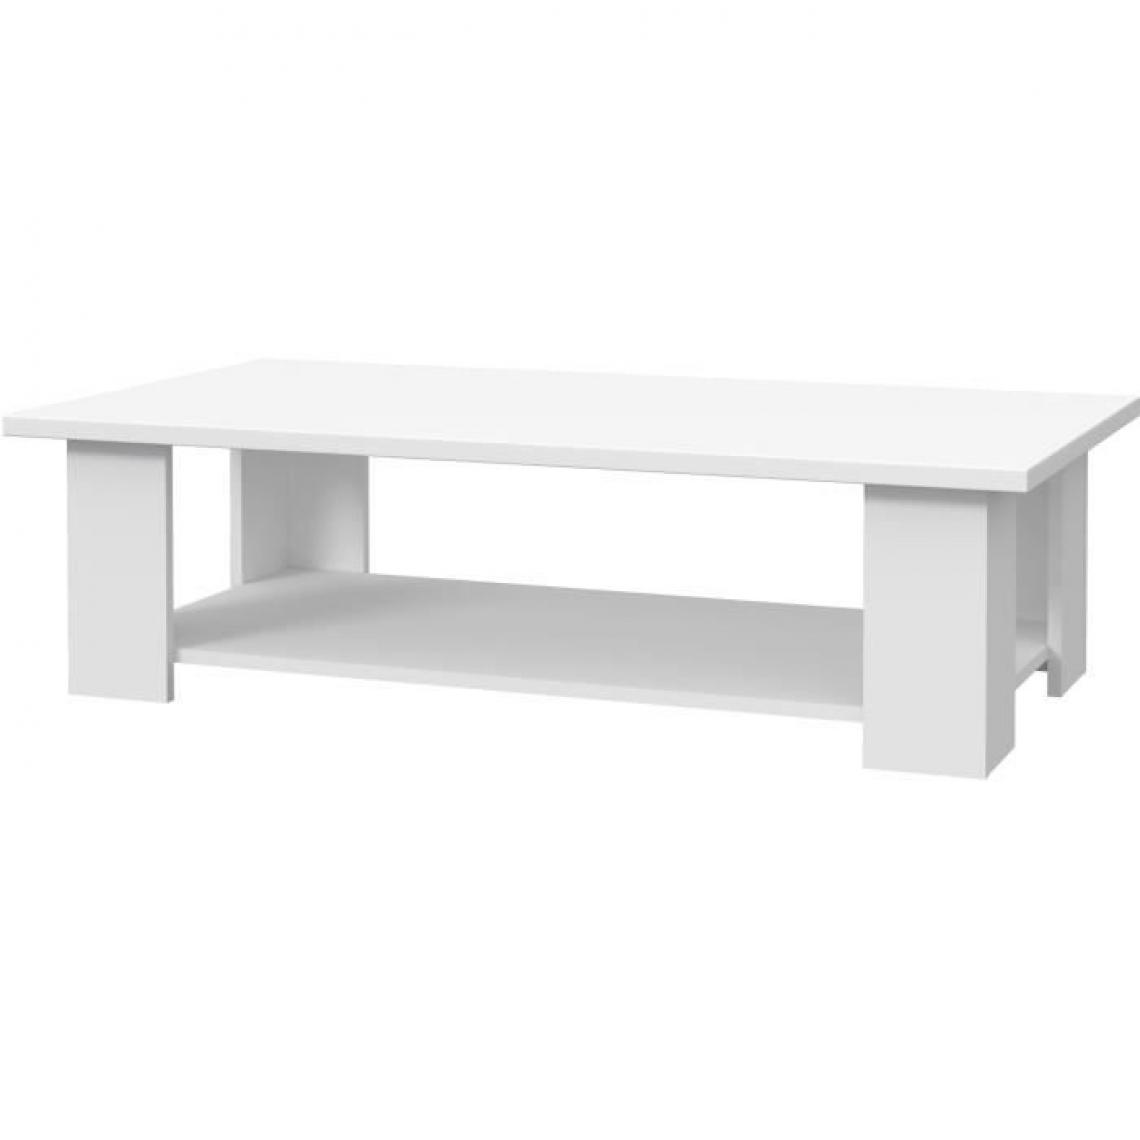 Cstore - PILVI - table basse rectangulaire - blanc mat - l 110xp 60xh 31 cm - Tables basses